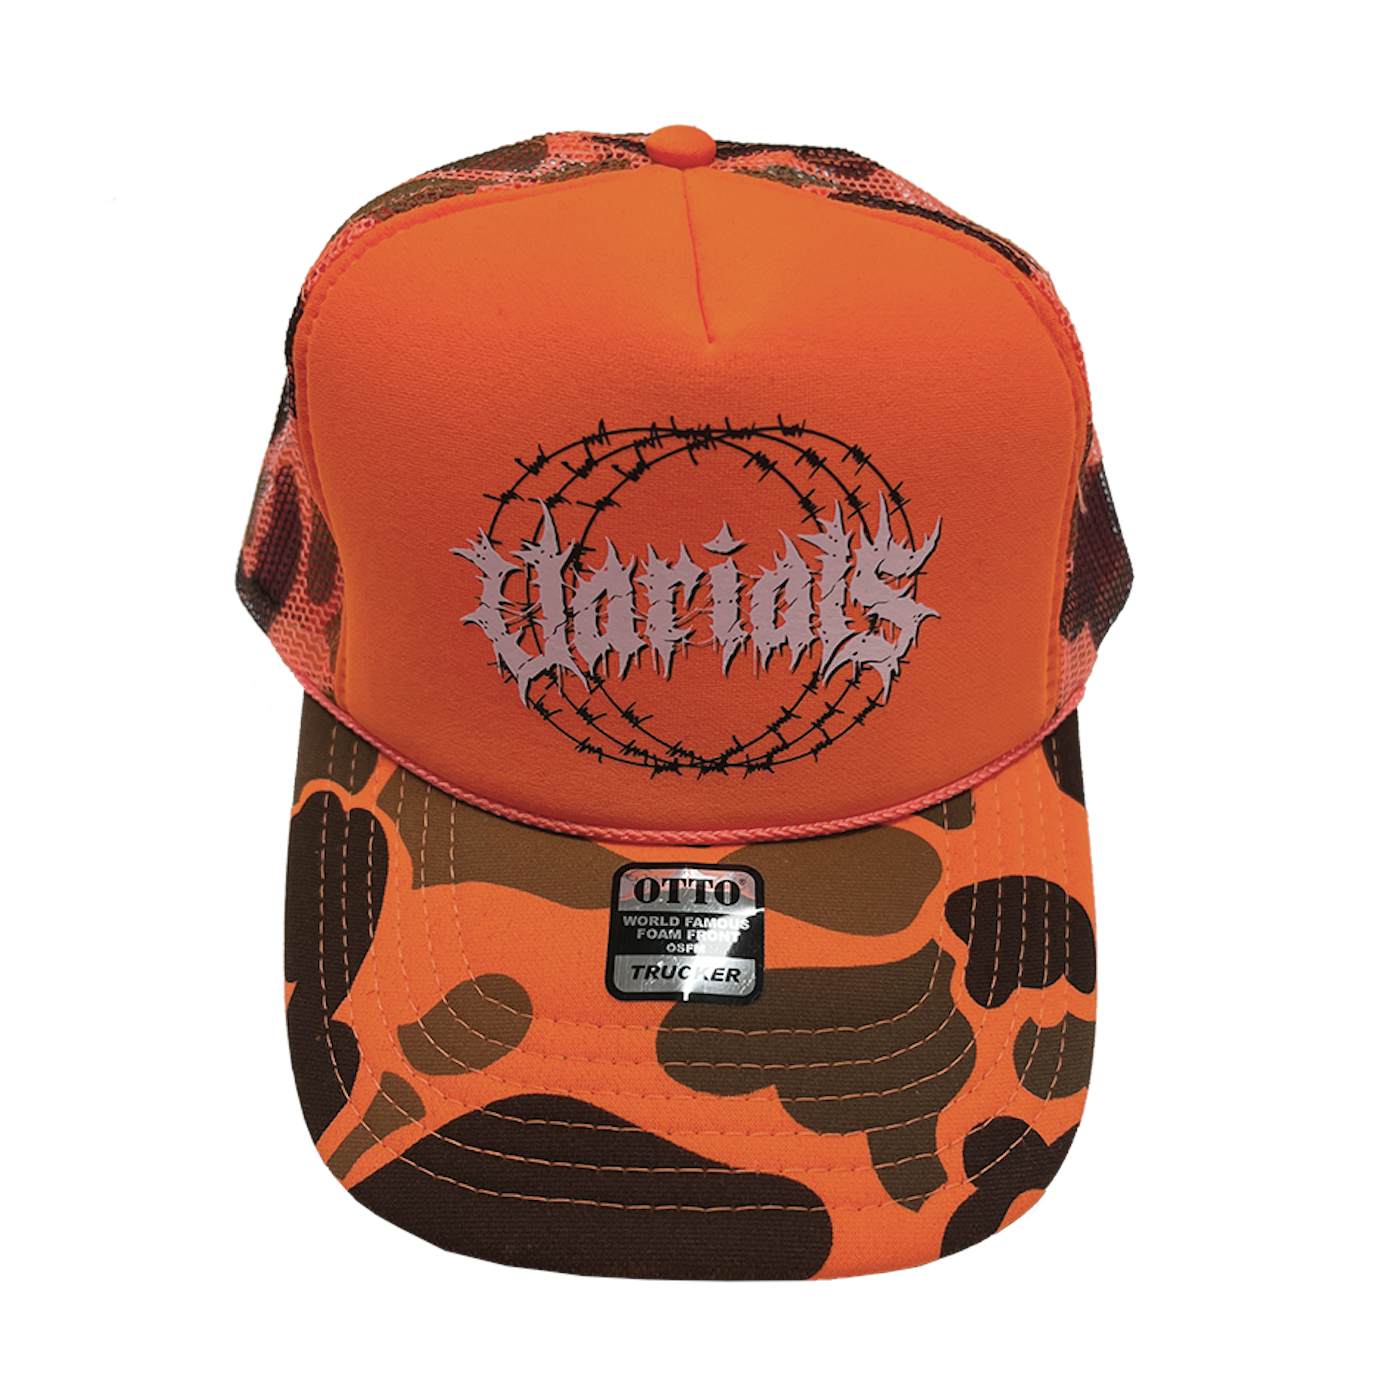 Varials "Orange Camo" Trucker Hat